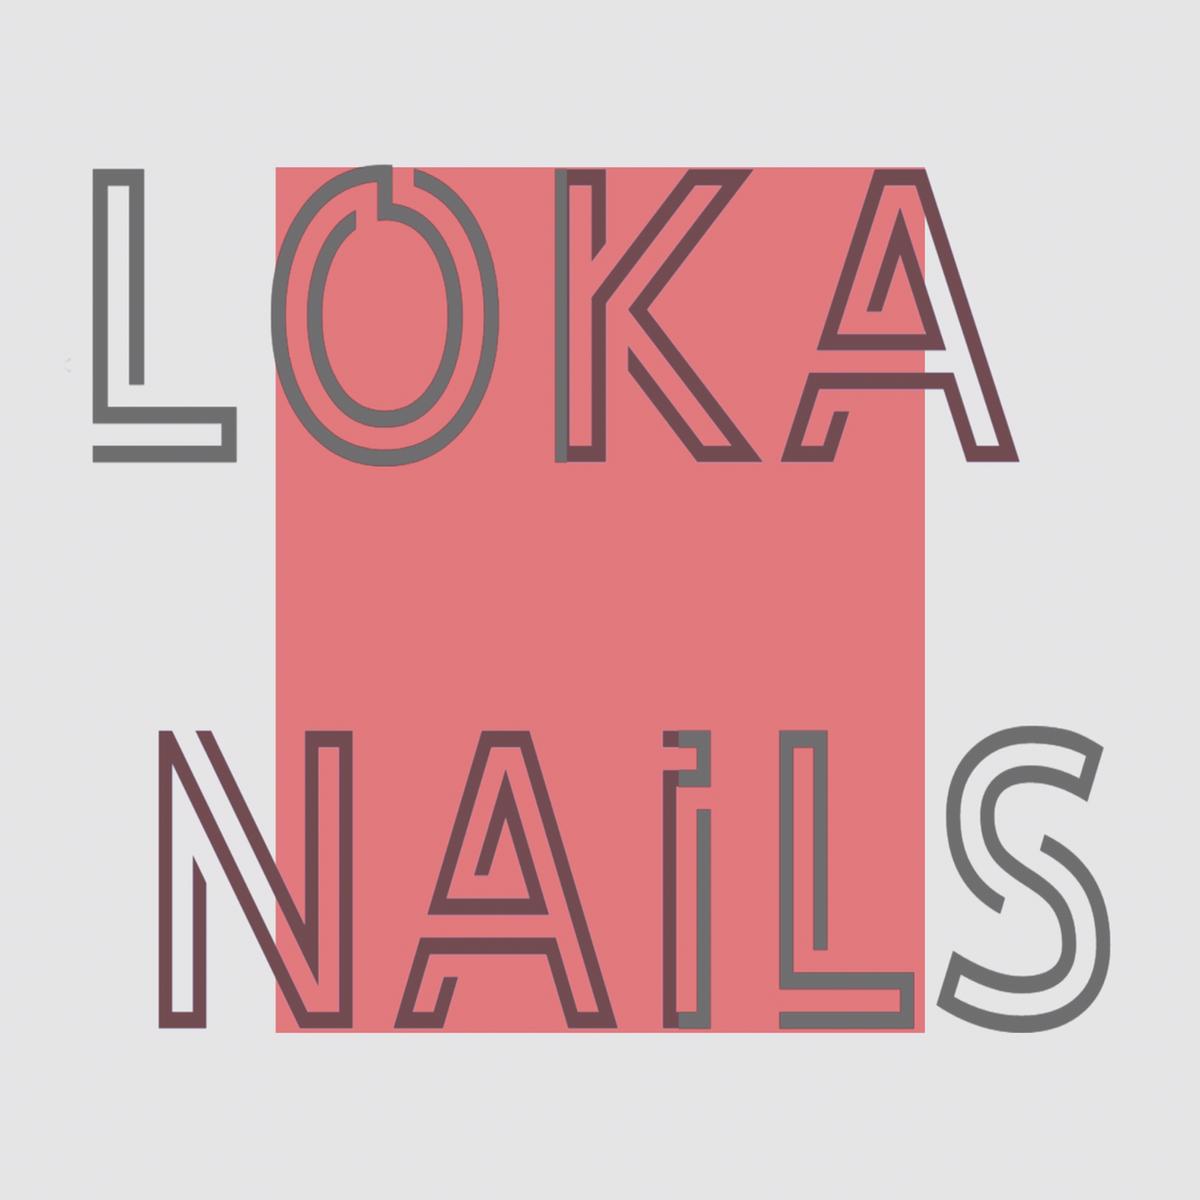 Loka Nails's images